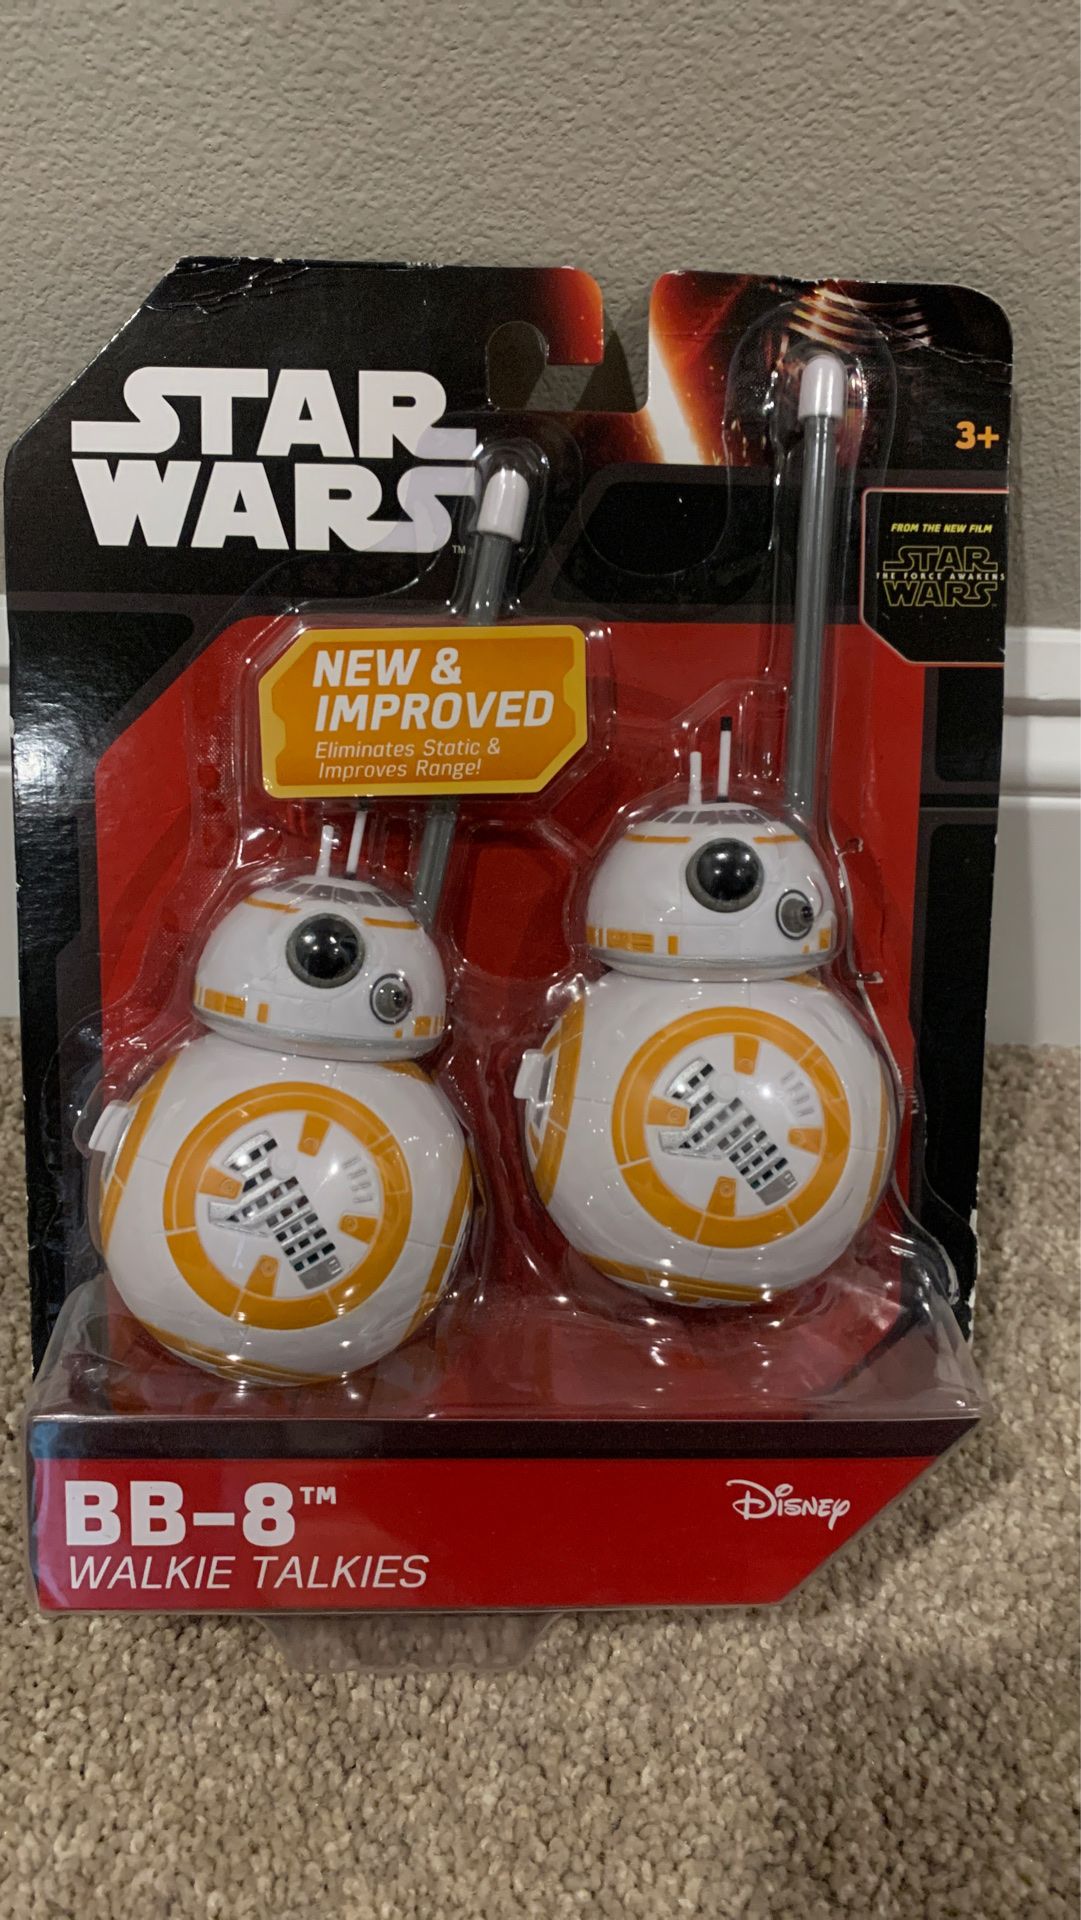 BB-8 walkie talkie brand new in box